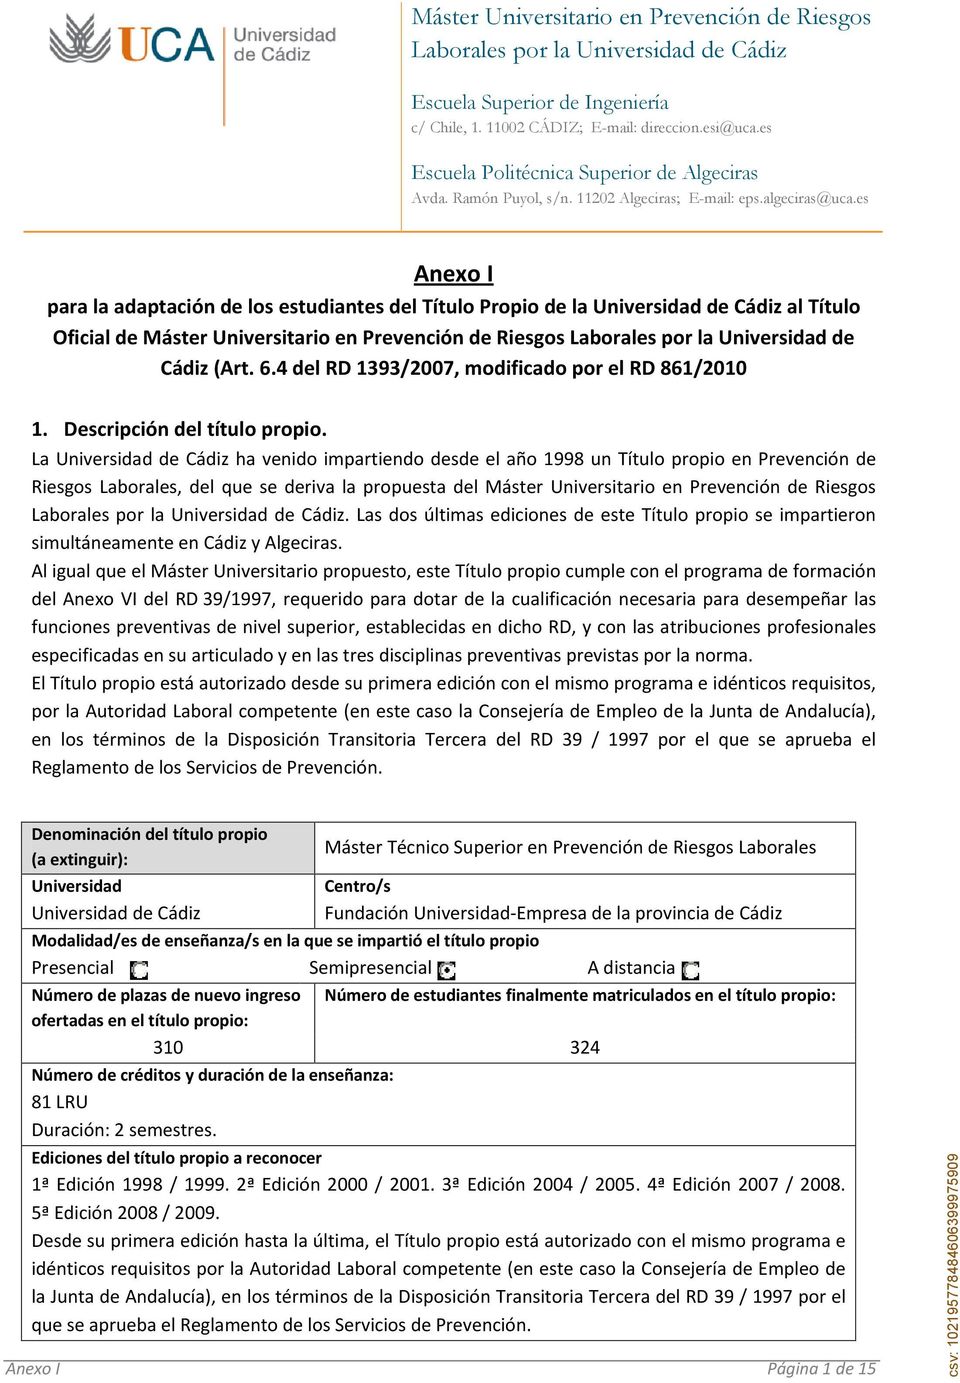 La Universidad de Cádiz ha venido impartiendo desde el año 1998 un Título propio en Prevención de Riesgos Laborales, del que se deriva la propuesta del Máster Universitario en Prevención de Riesgos.